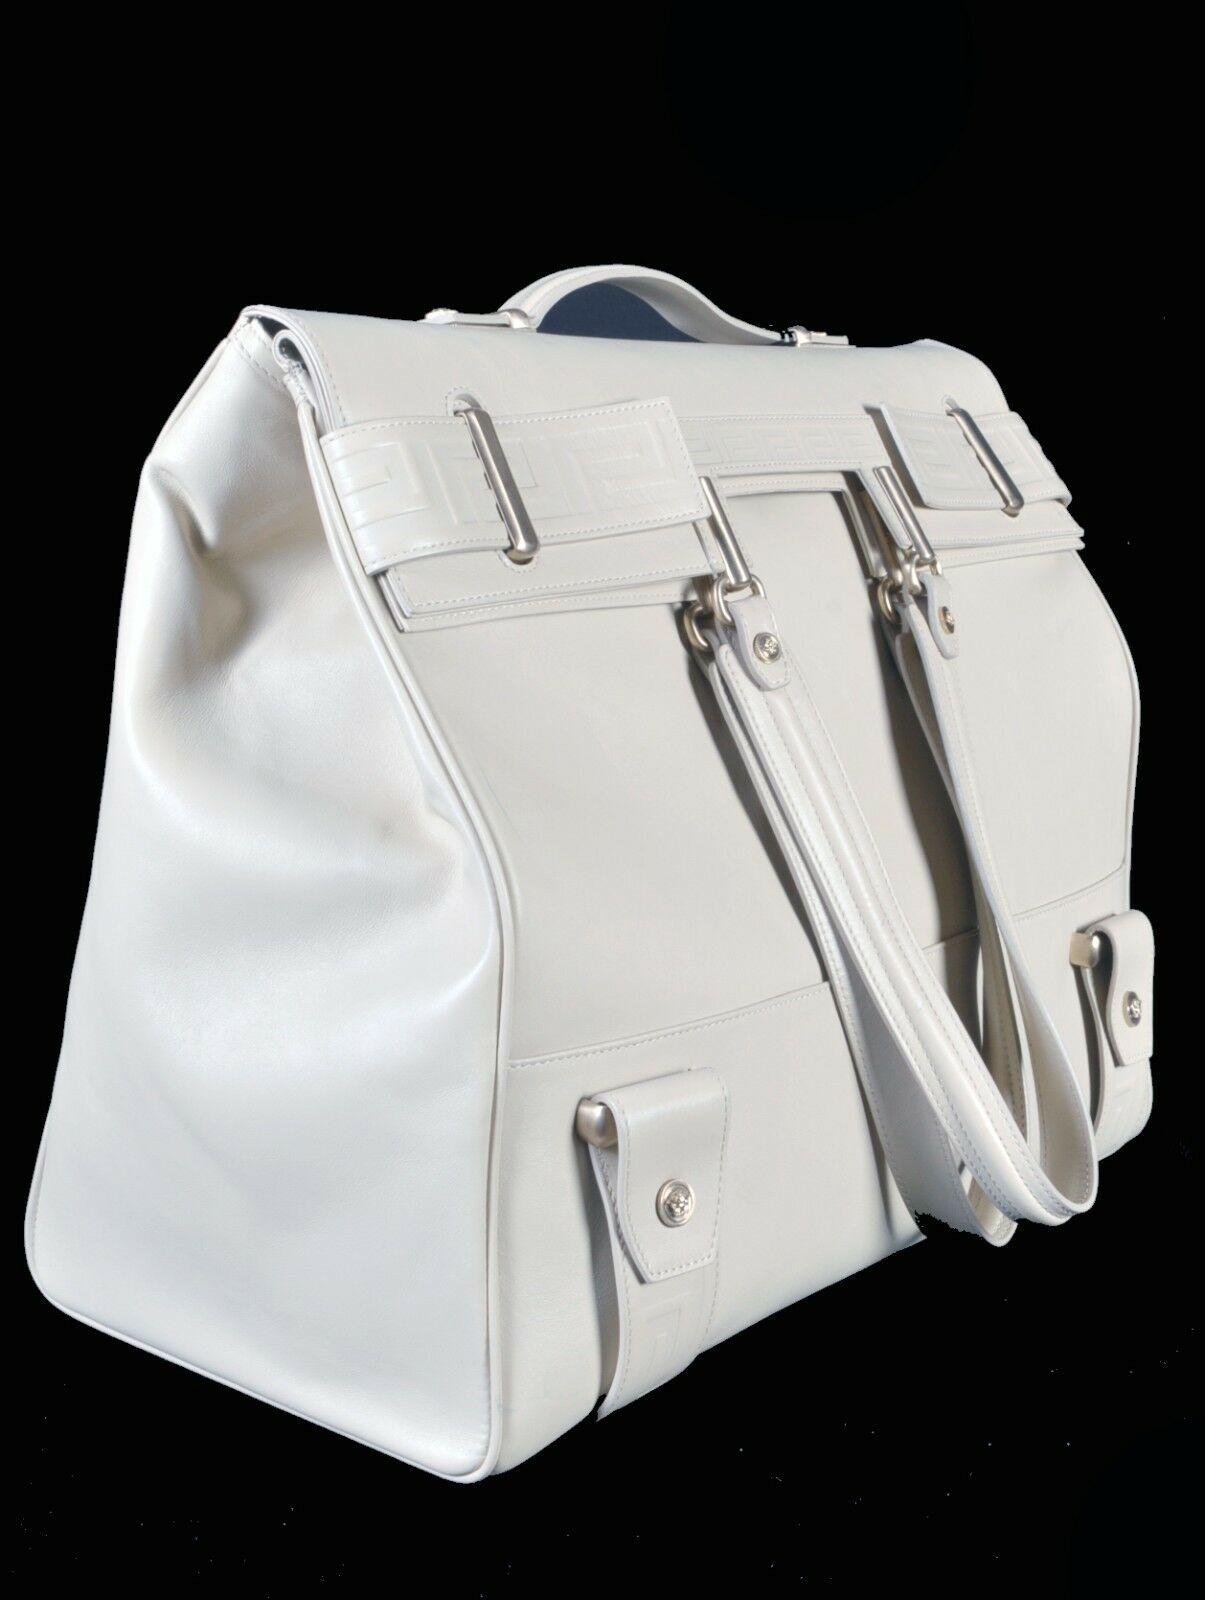 Beige S/S 2012 Look # 15 New VERSACE Men's Travel Leather Handbag